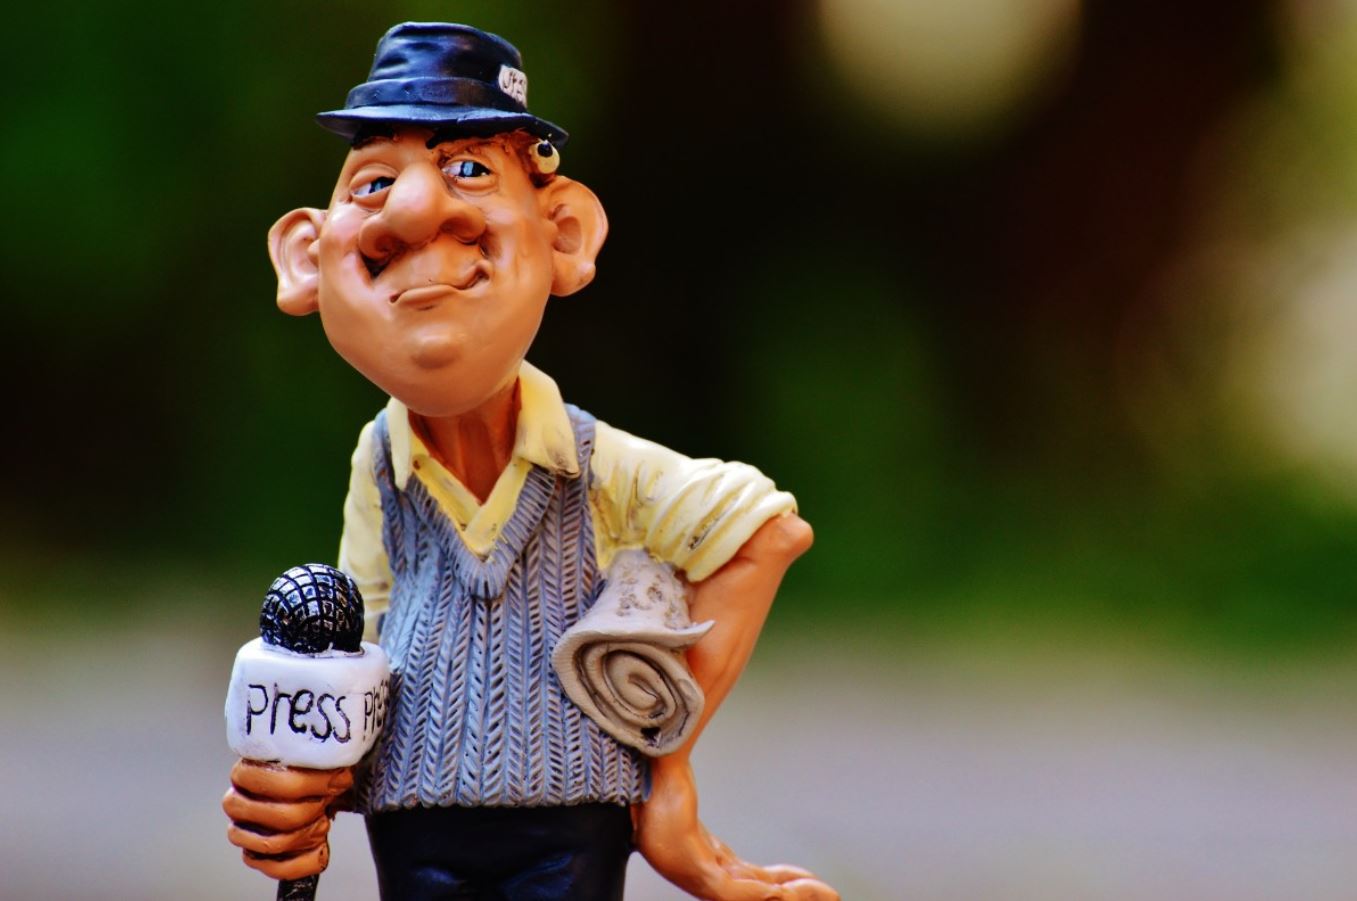 Sharing Media: Italia sotto media europea per numero di giornalisti